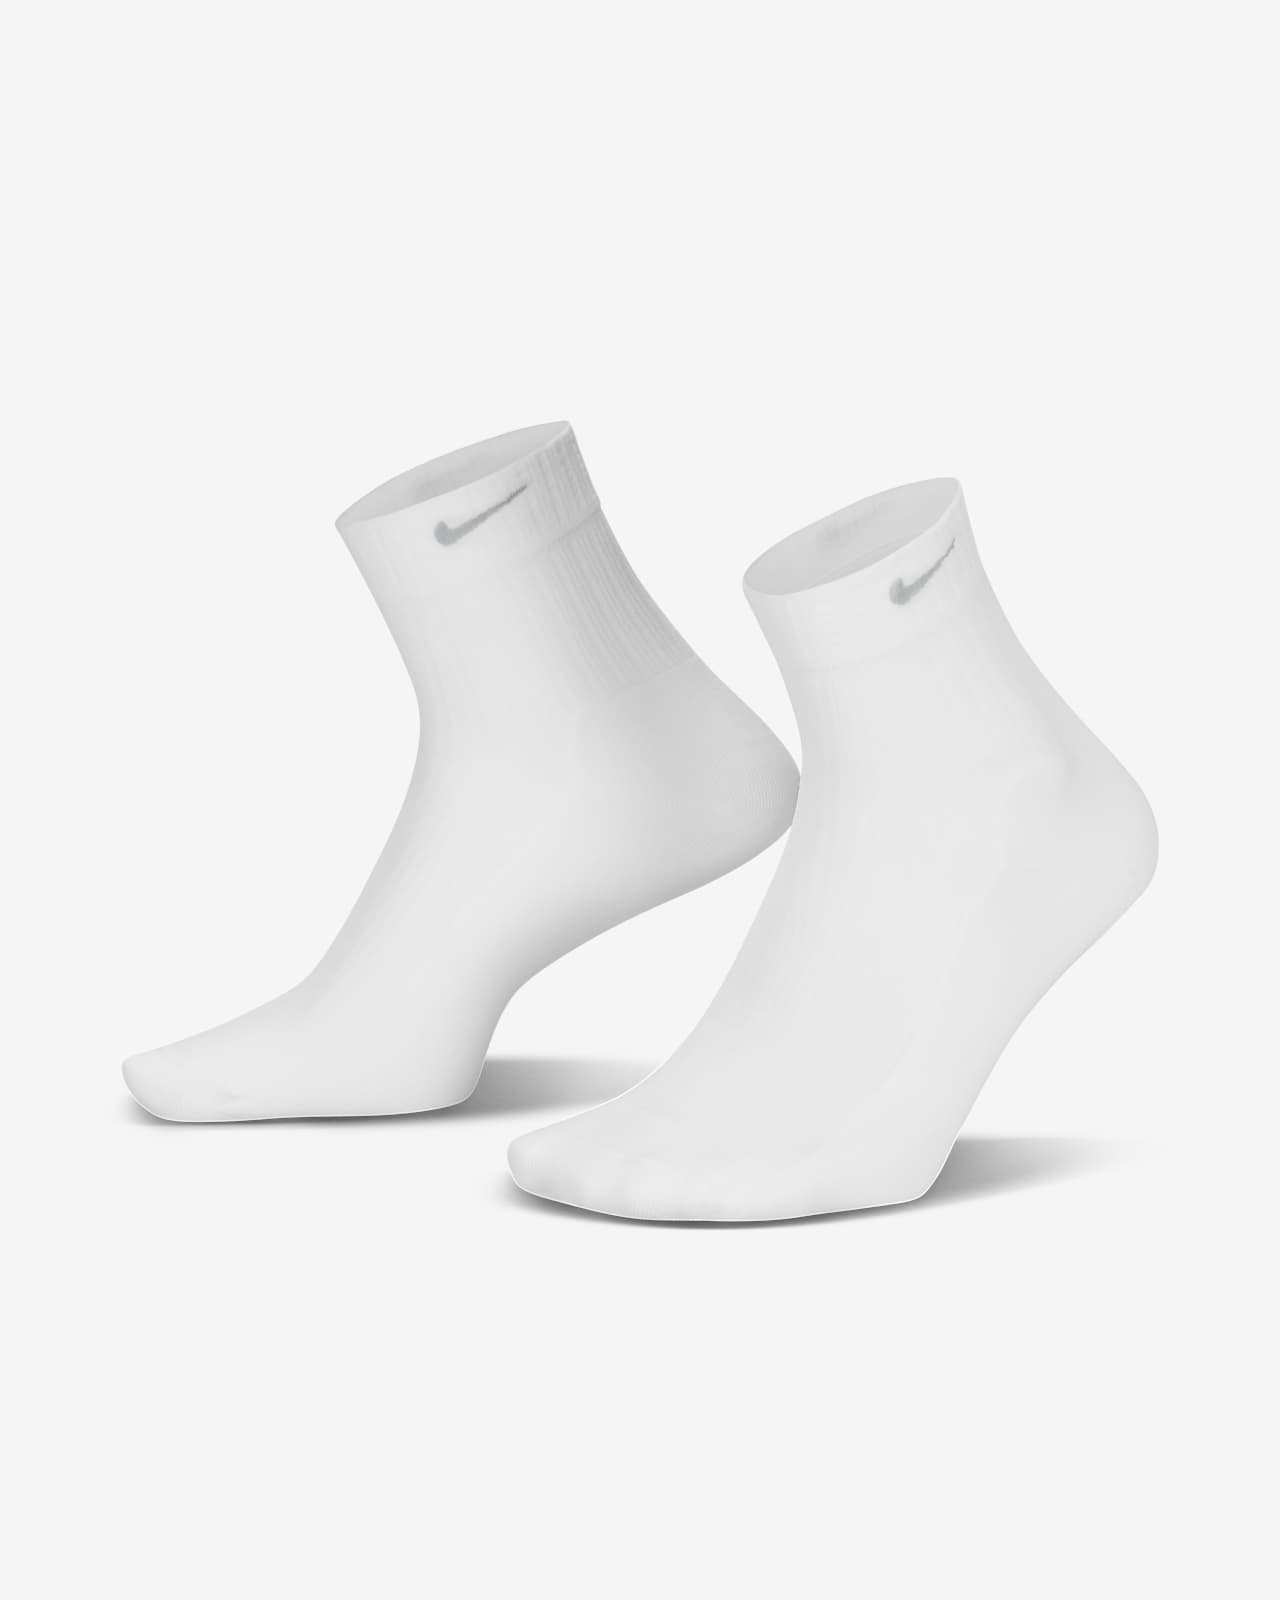 Nike transparente Knöchelsocken für Damen (1 Paar)